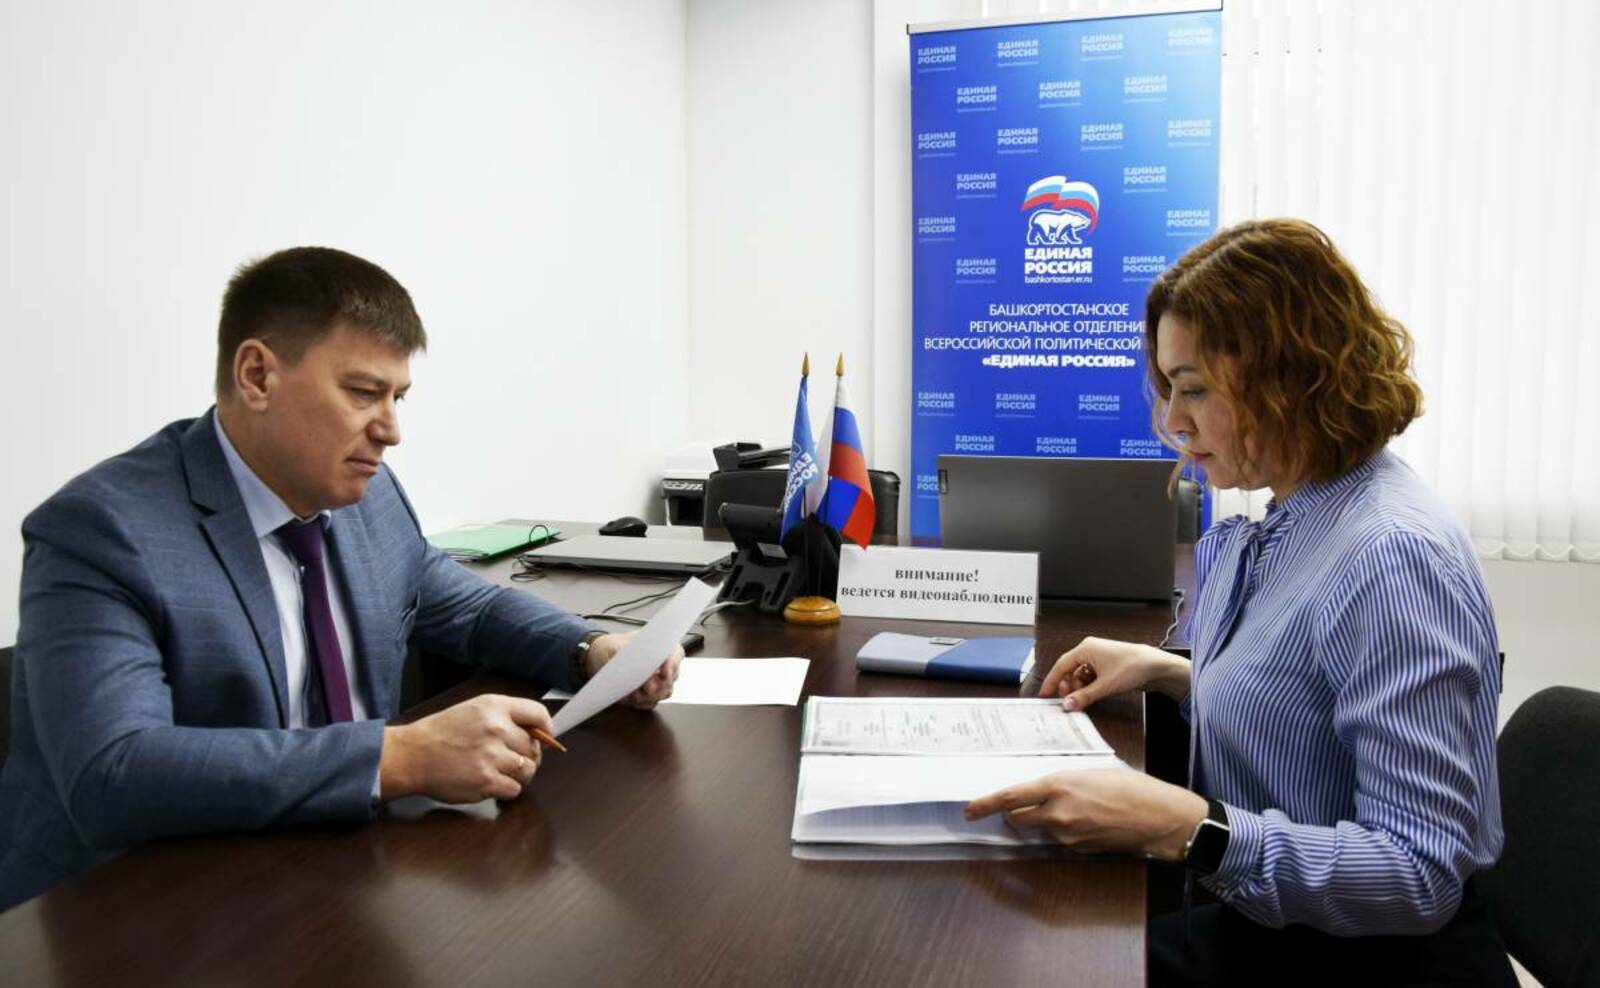 Дмитрий Новиков подал заявление для участия в предварительном голосовании